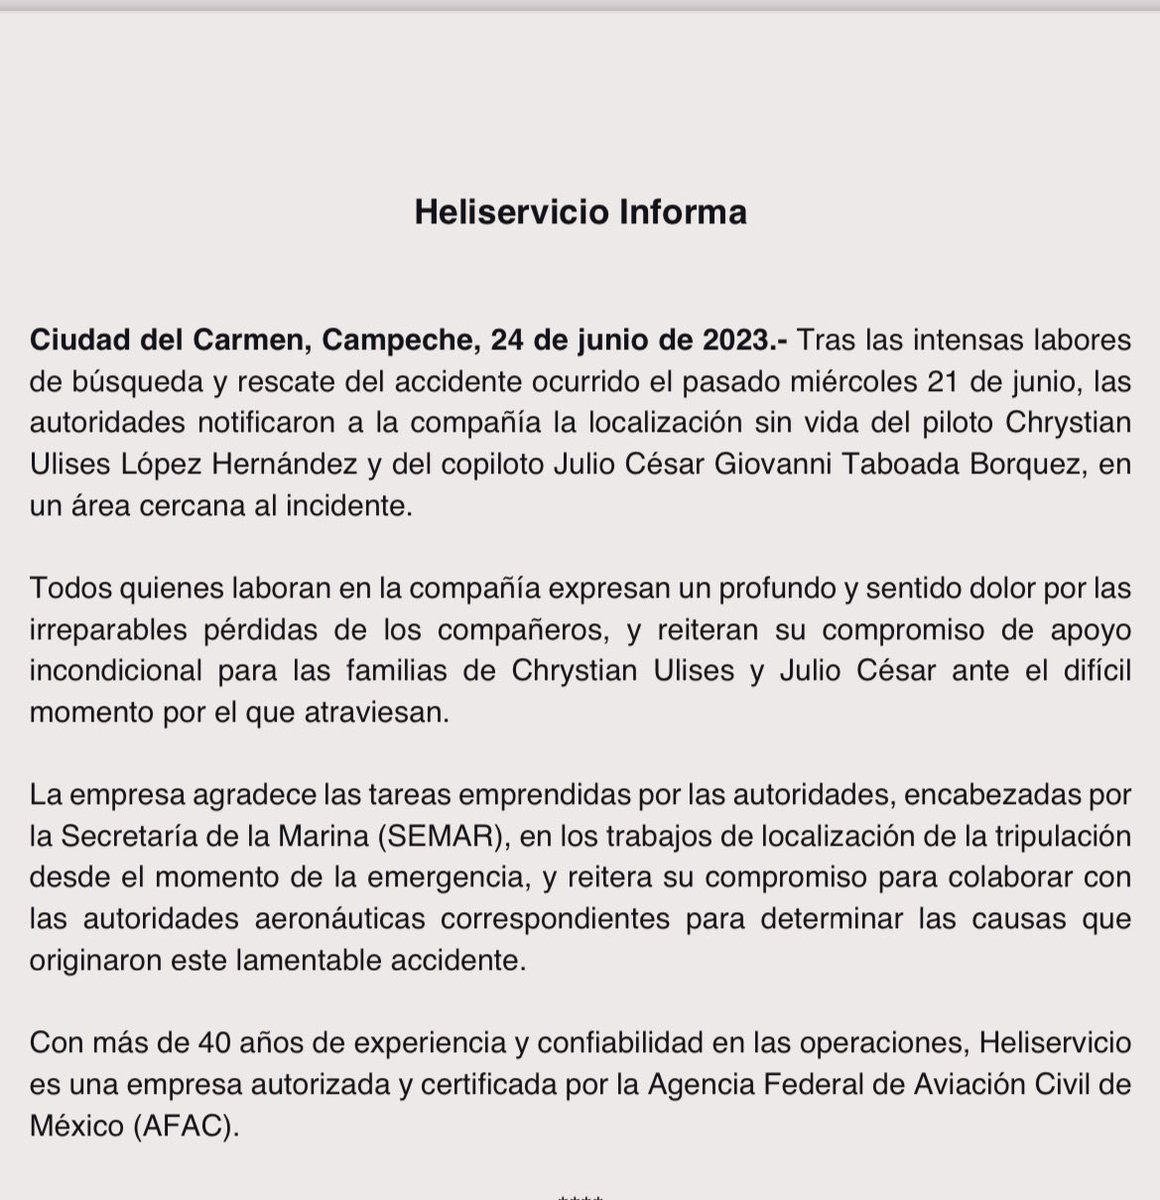 🔺#AHORA: La empresa Heliservicio informa que fueron localizados los cuerpos de los dos pilotos que fallecieron el miércoles pasado al caer un helicóptero en la sonda de Campeche. 

Agradecen a la @SEMAR_mx el apoyo para la búsqueda. 

#AsíPasó #LasNoticiasAsí